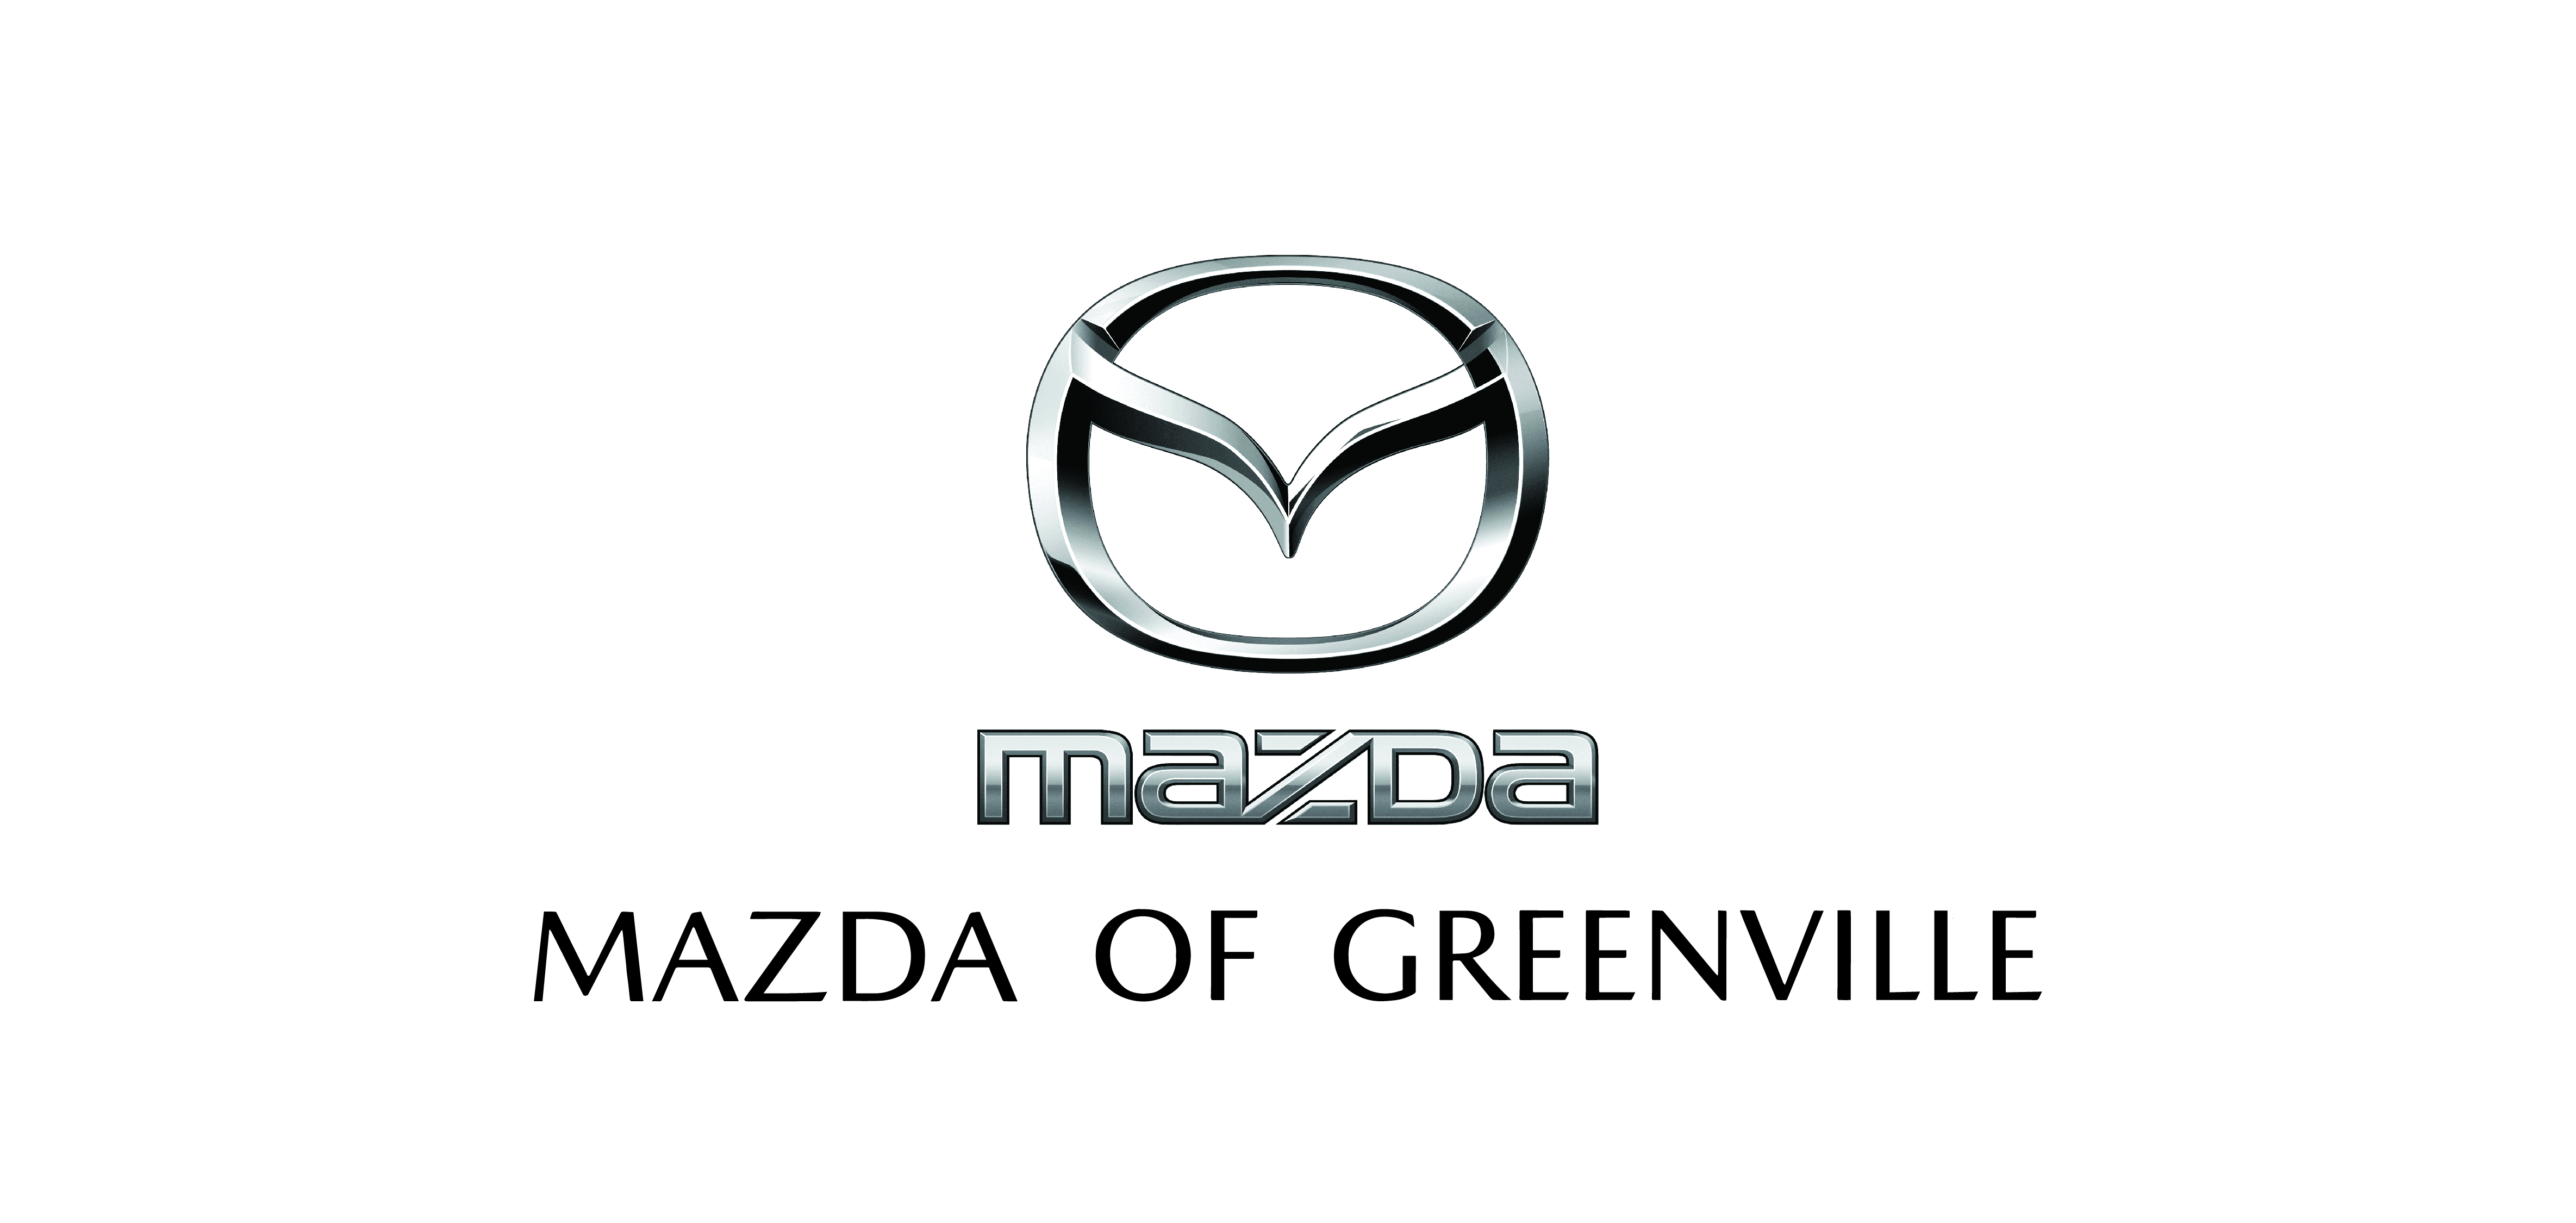 Mazda of Greenville